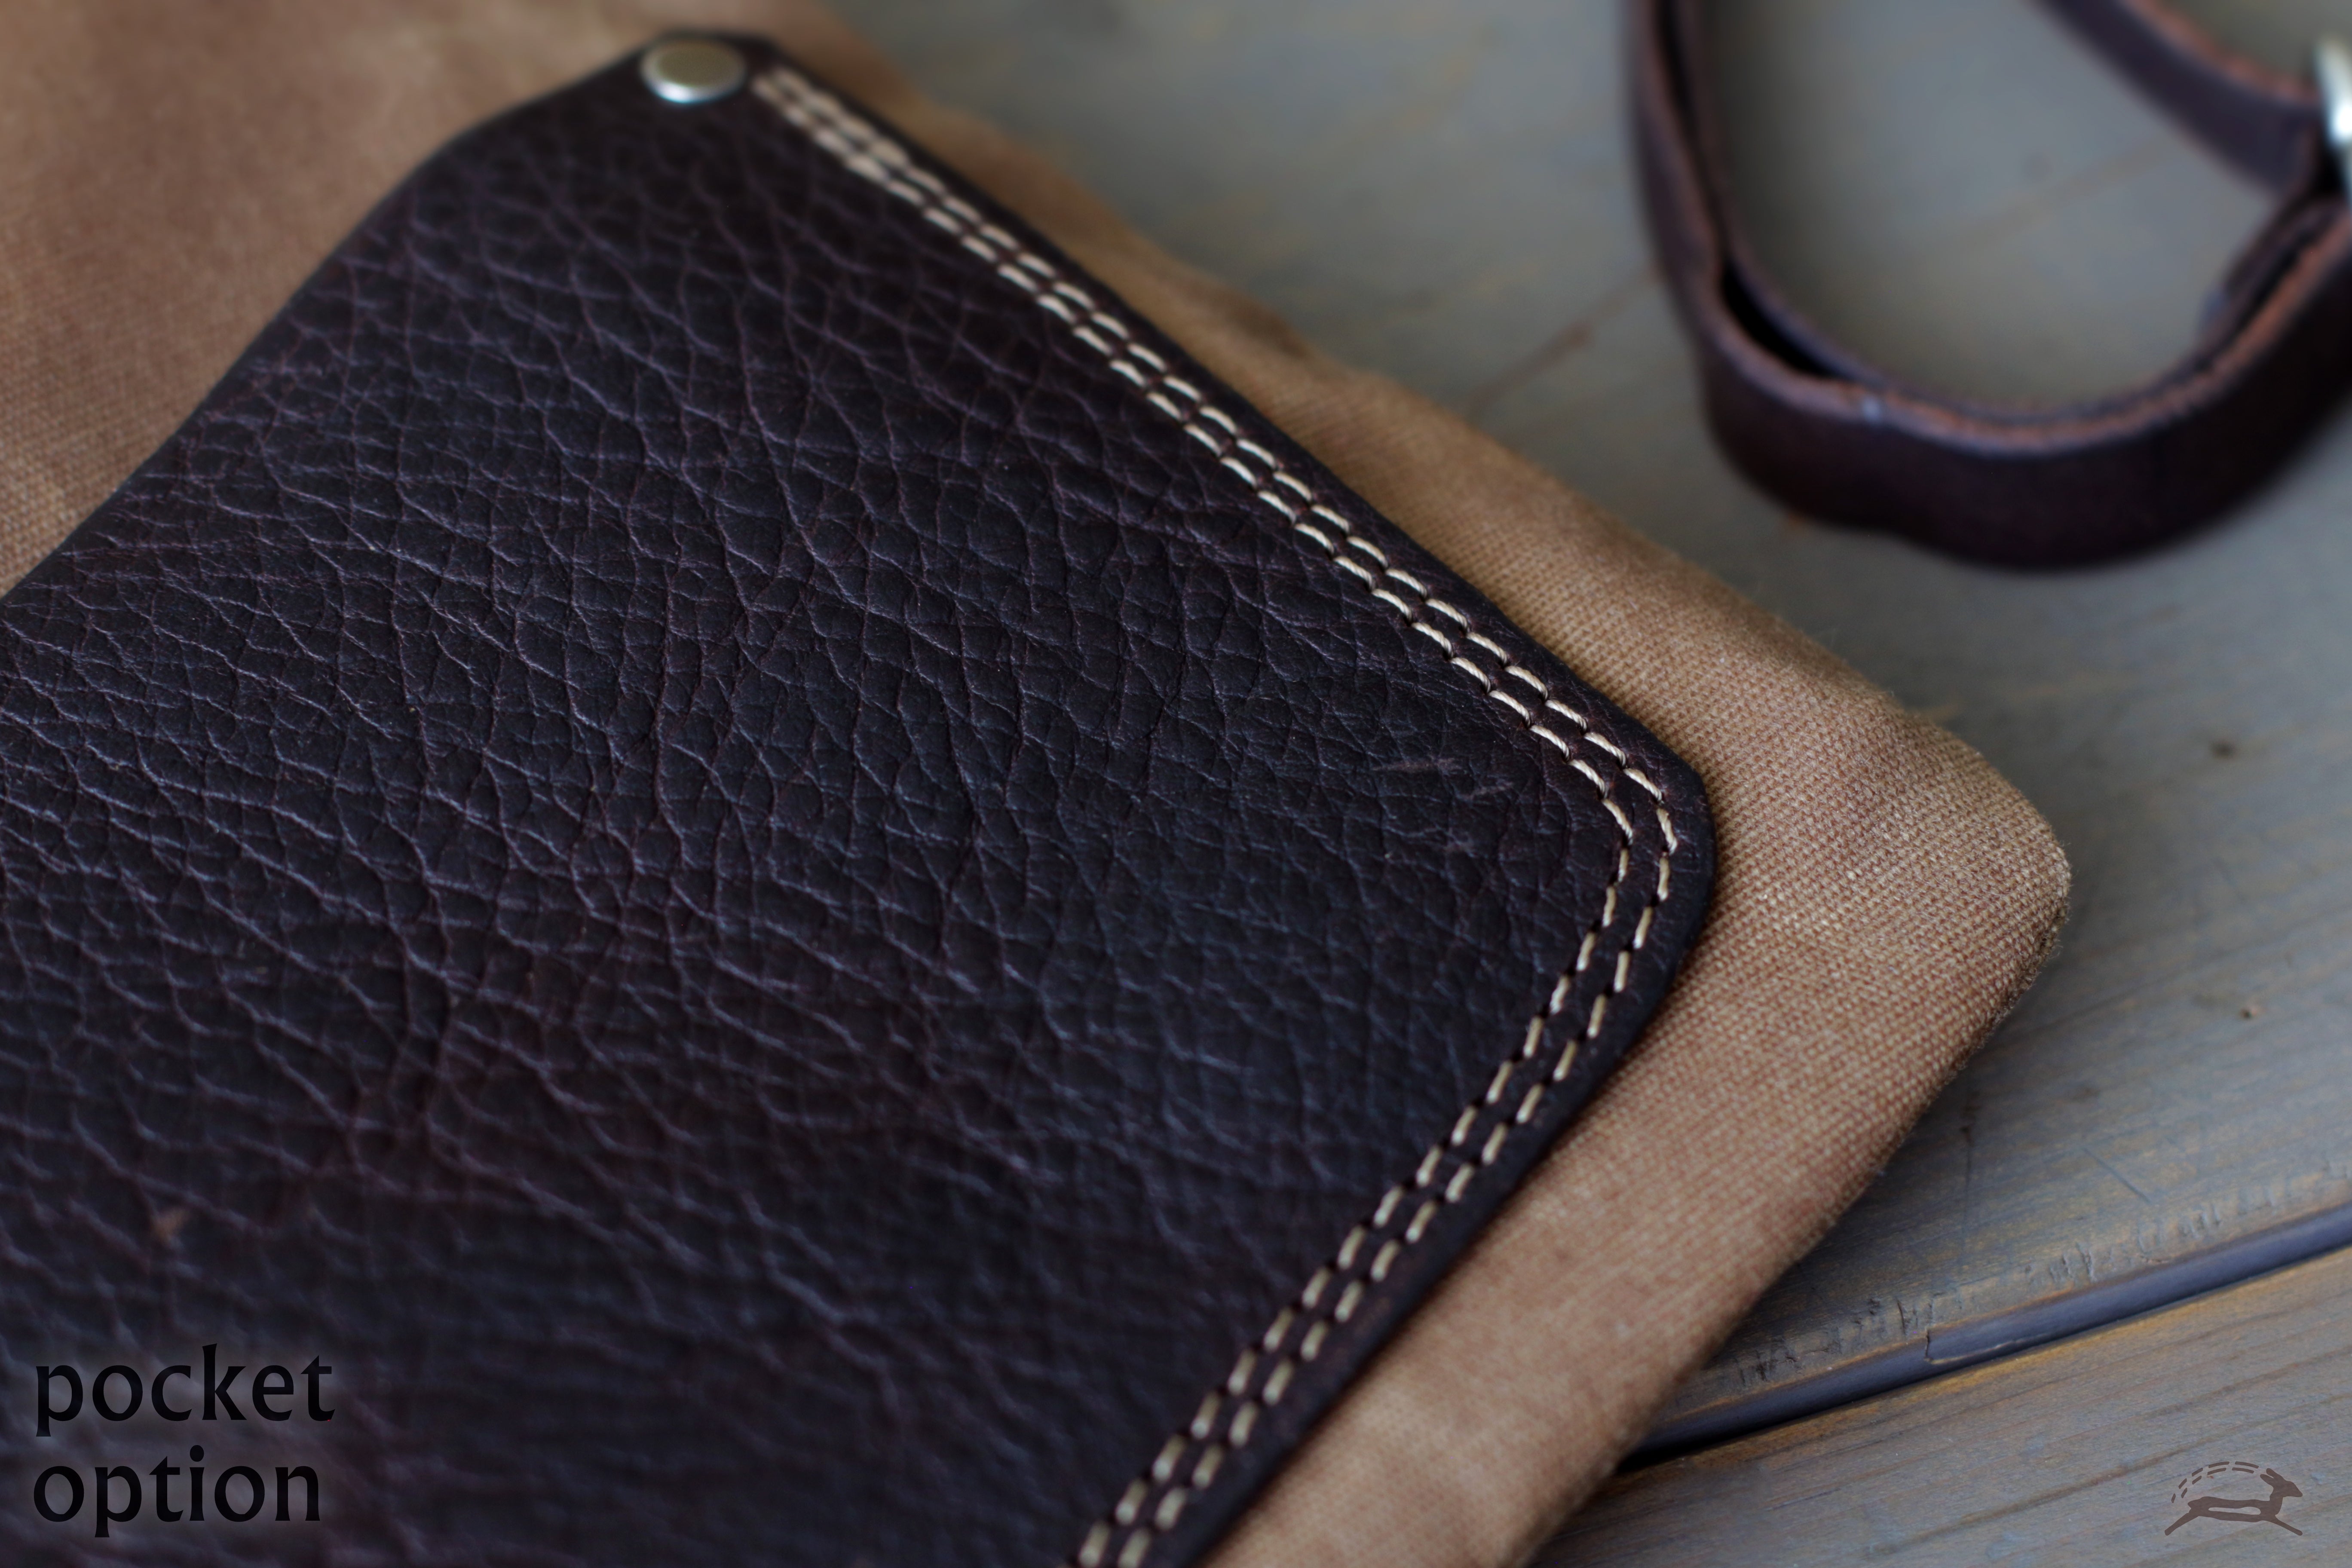 Slim Handbag Optional Pocket - OCHRE handcrafted